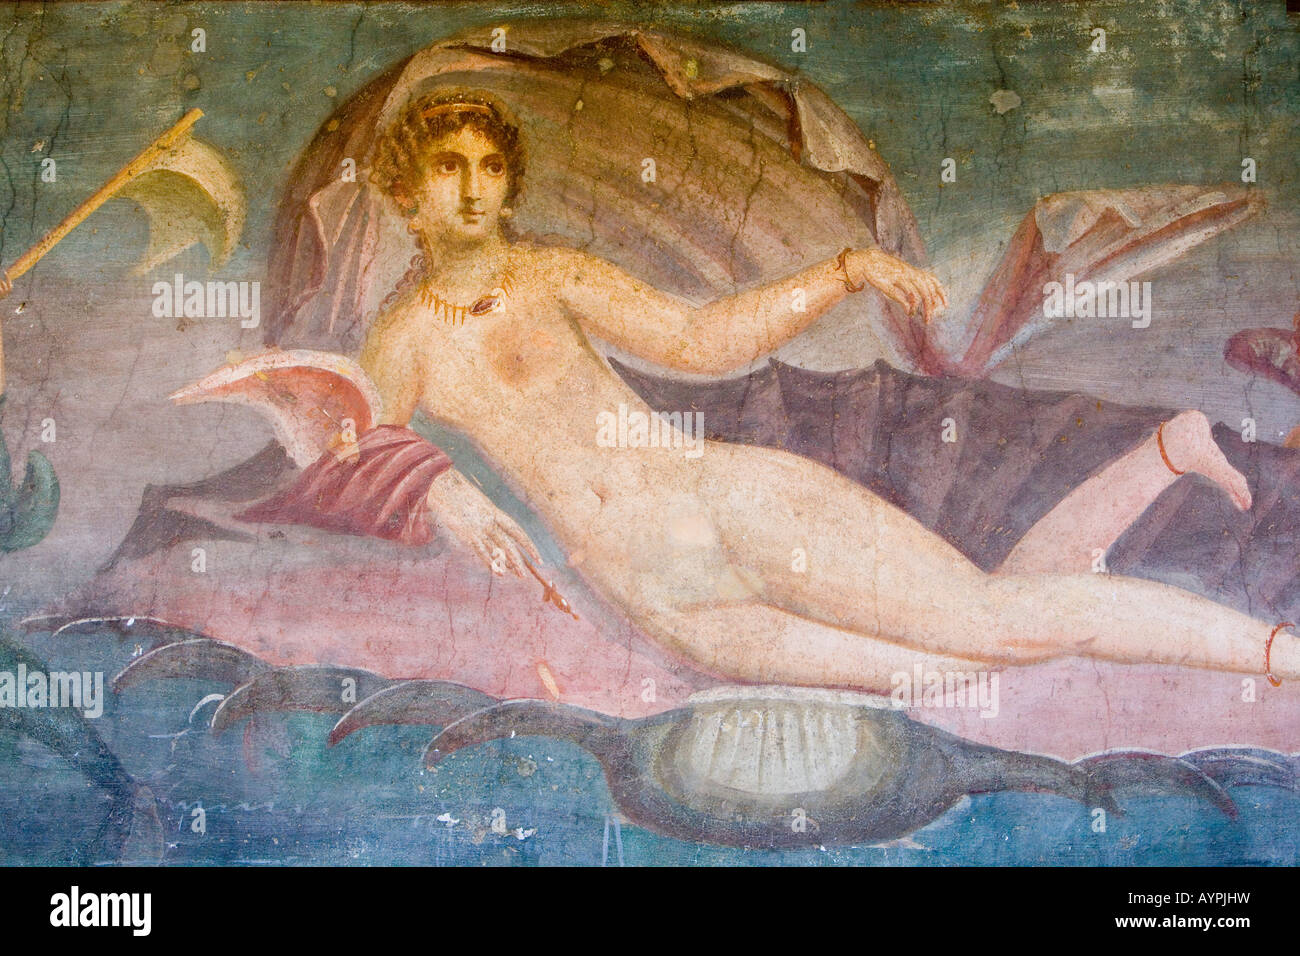 Peinture de Vénus, Chambre de Vénus, site archéologique de Pompéi, Pompéi, Italie Banque D'Images